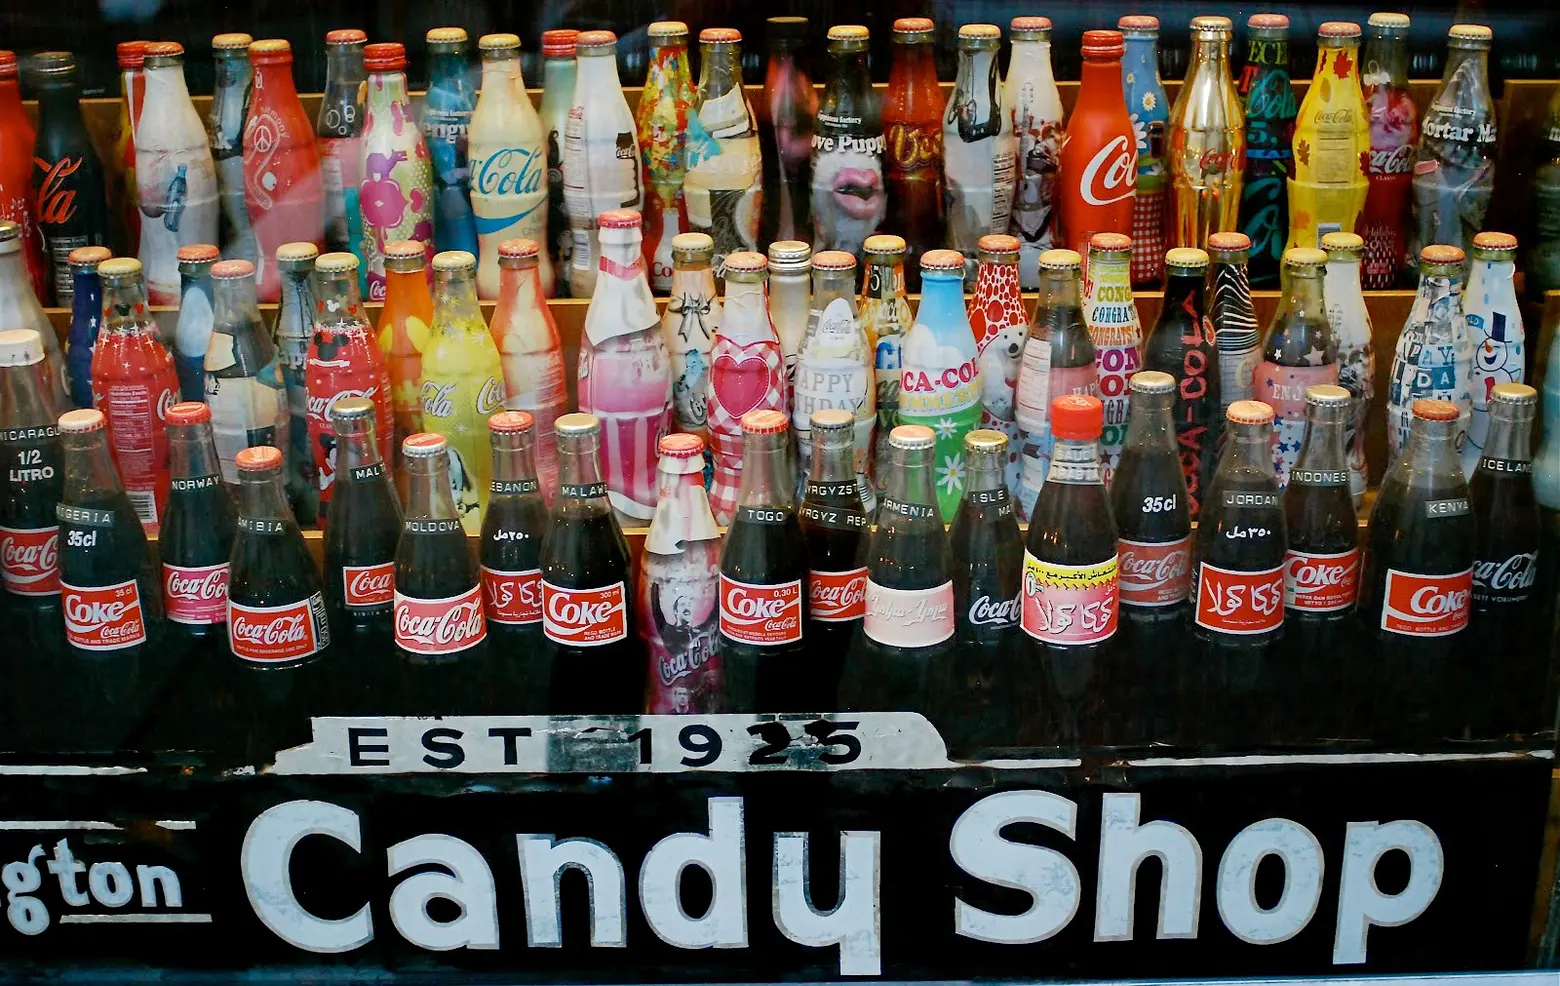 Lexington Candy Shop, Coca Cola collection, vintage coke bottles, NYC luncheonette